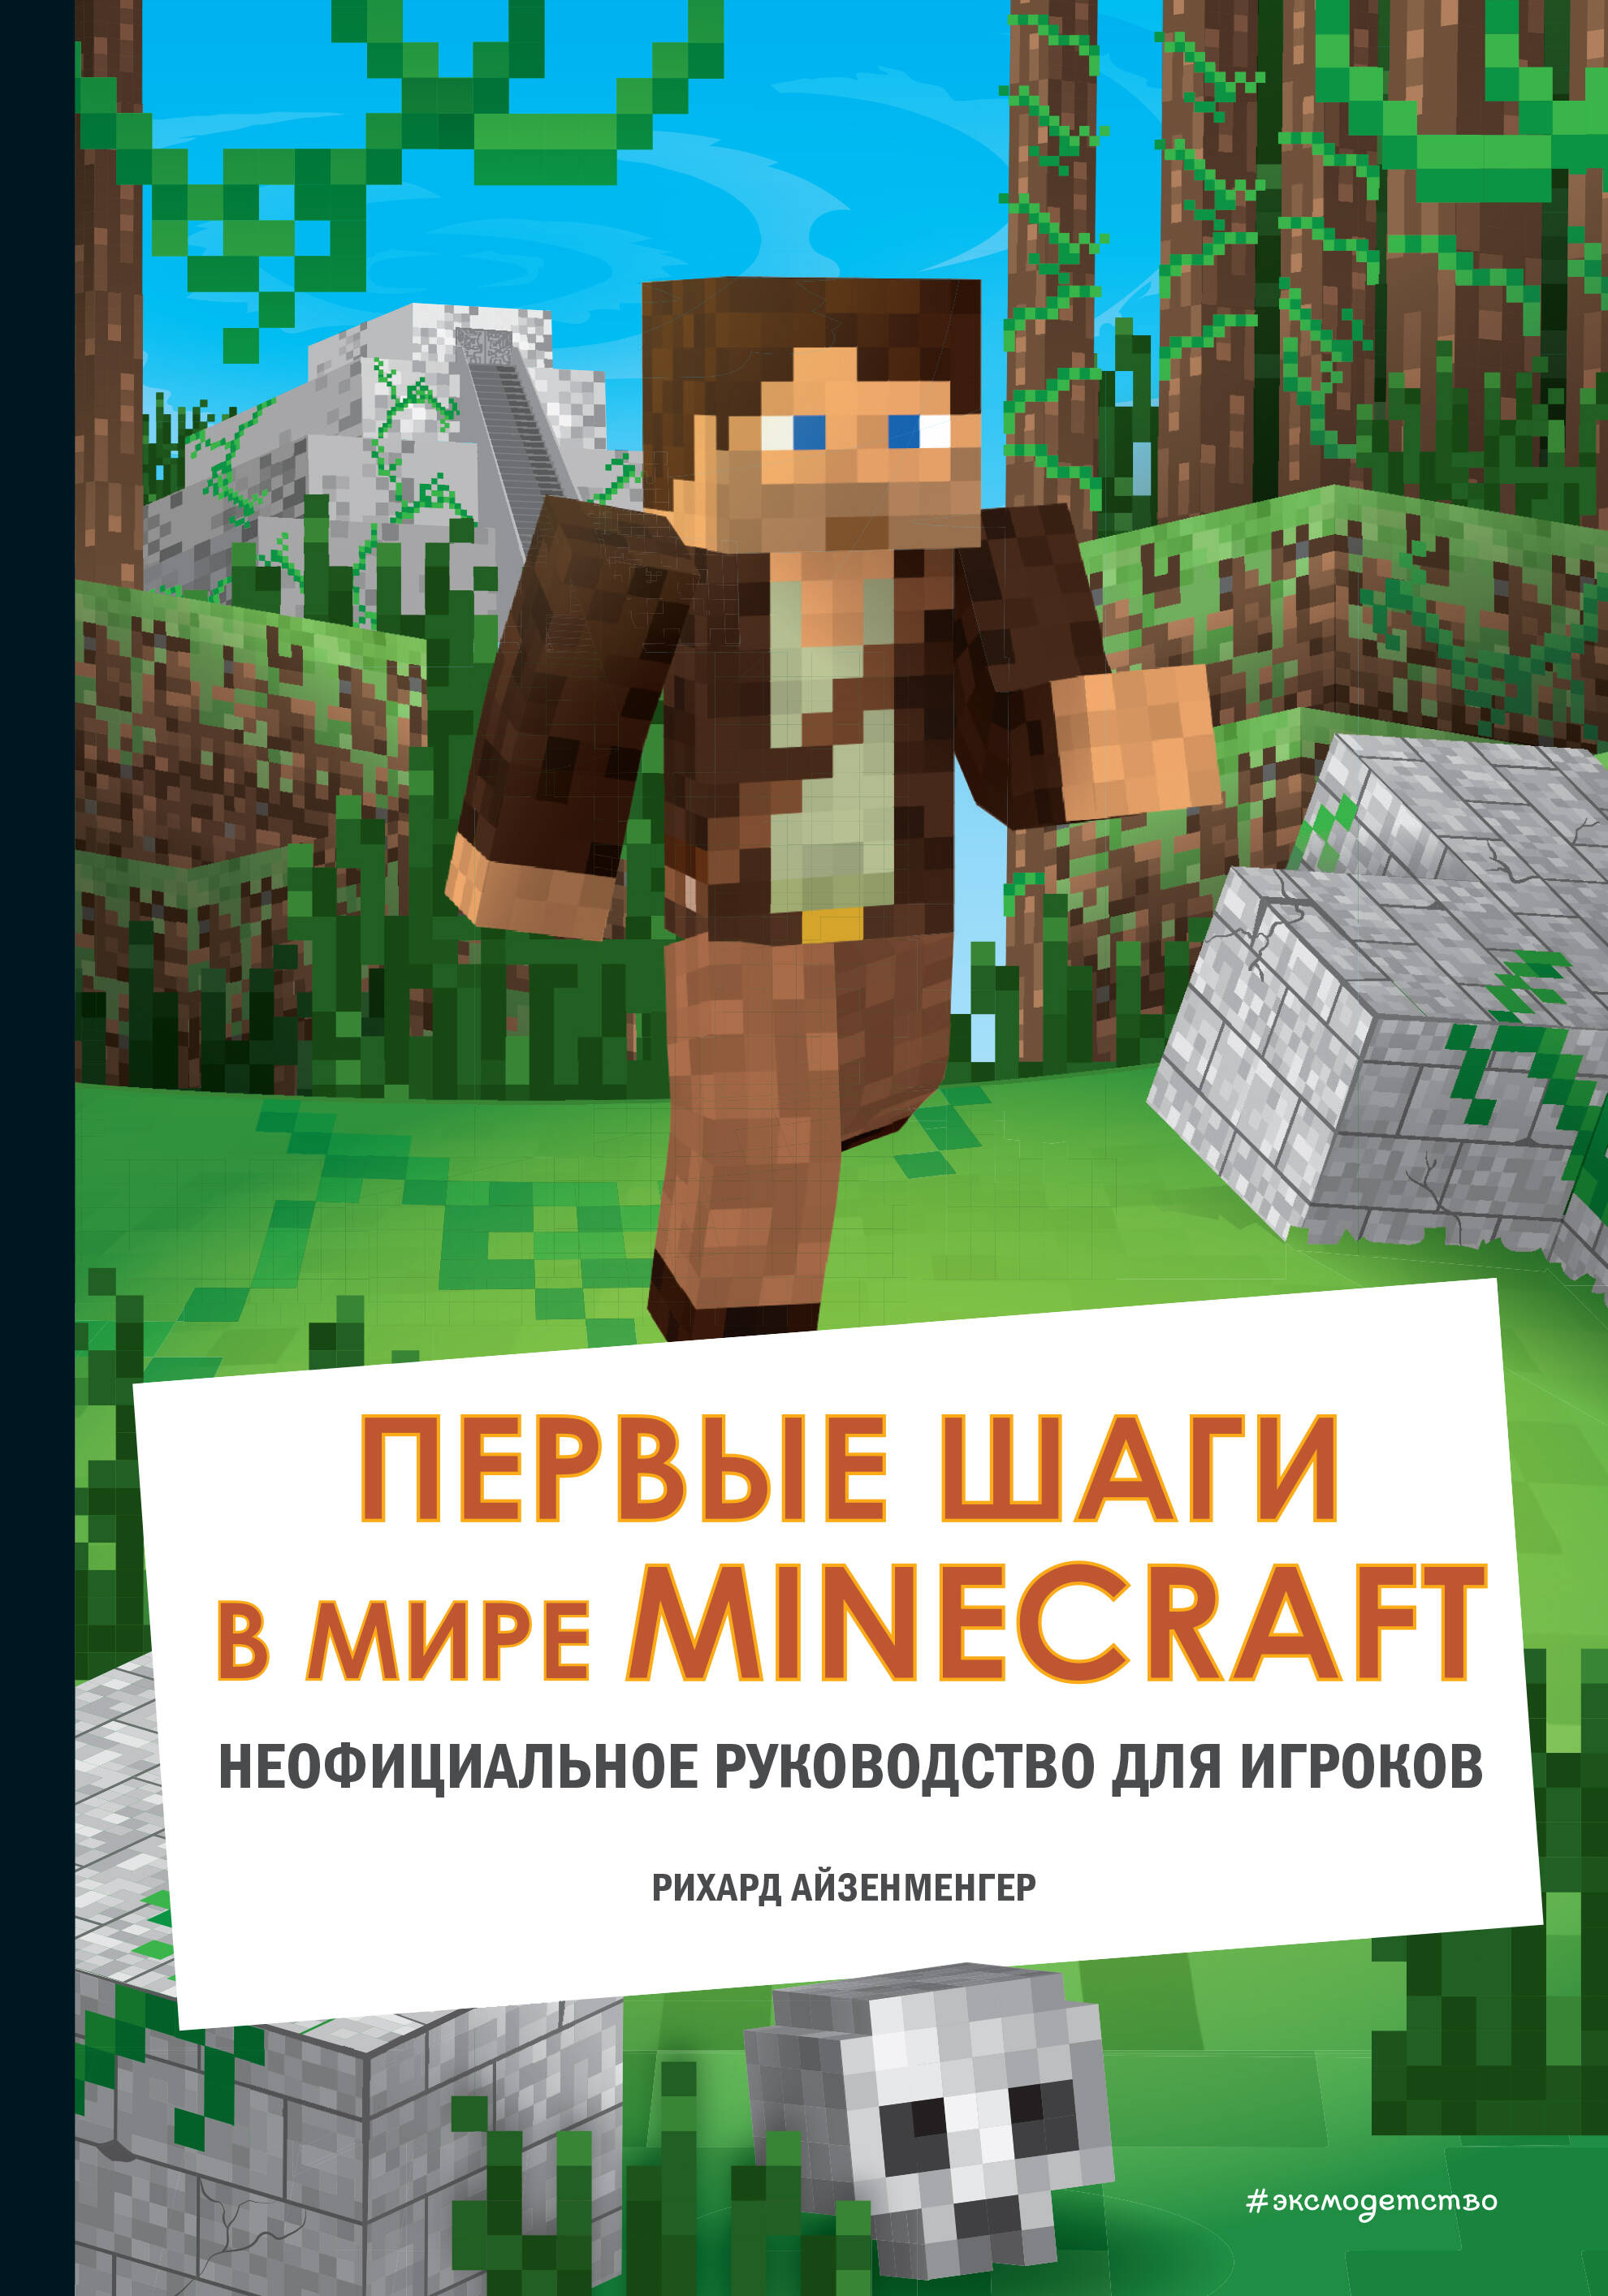 Первые шаги в мире Minecraft. Неофициальное руководство для игроков обустройство в мире minecraft неофициальное руководство для игроков айзенменгер рихард